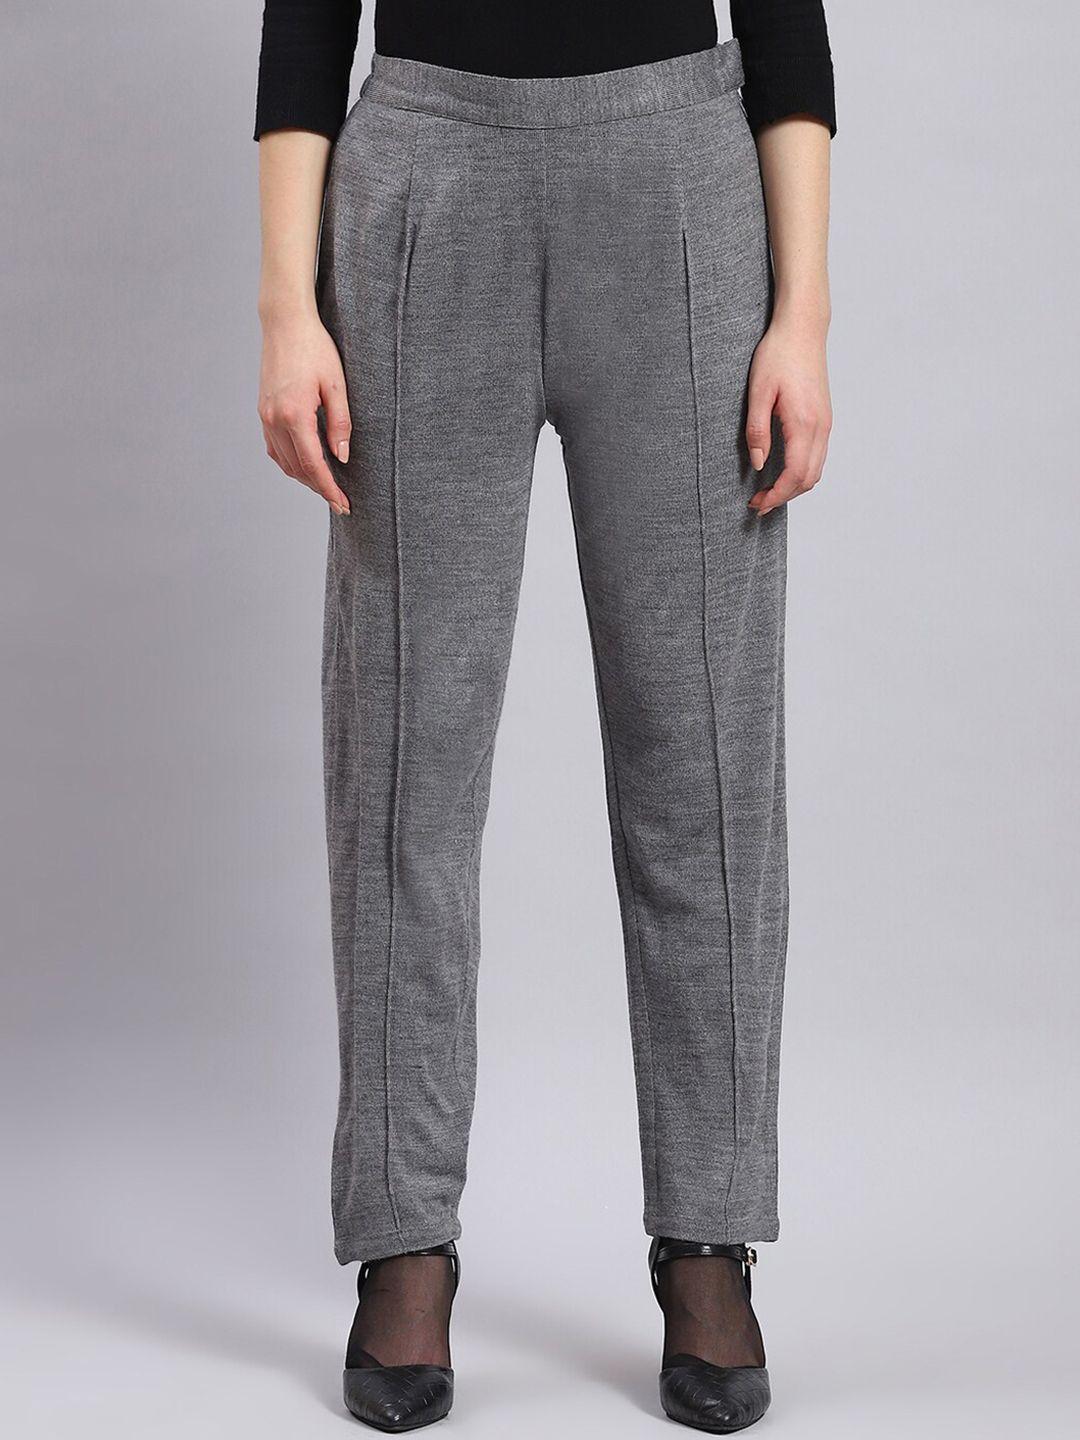 monte-carlo-self-design-mid-rise-trouser